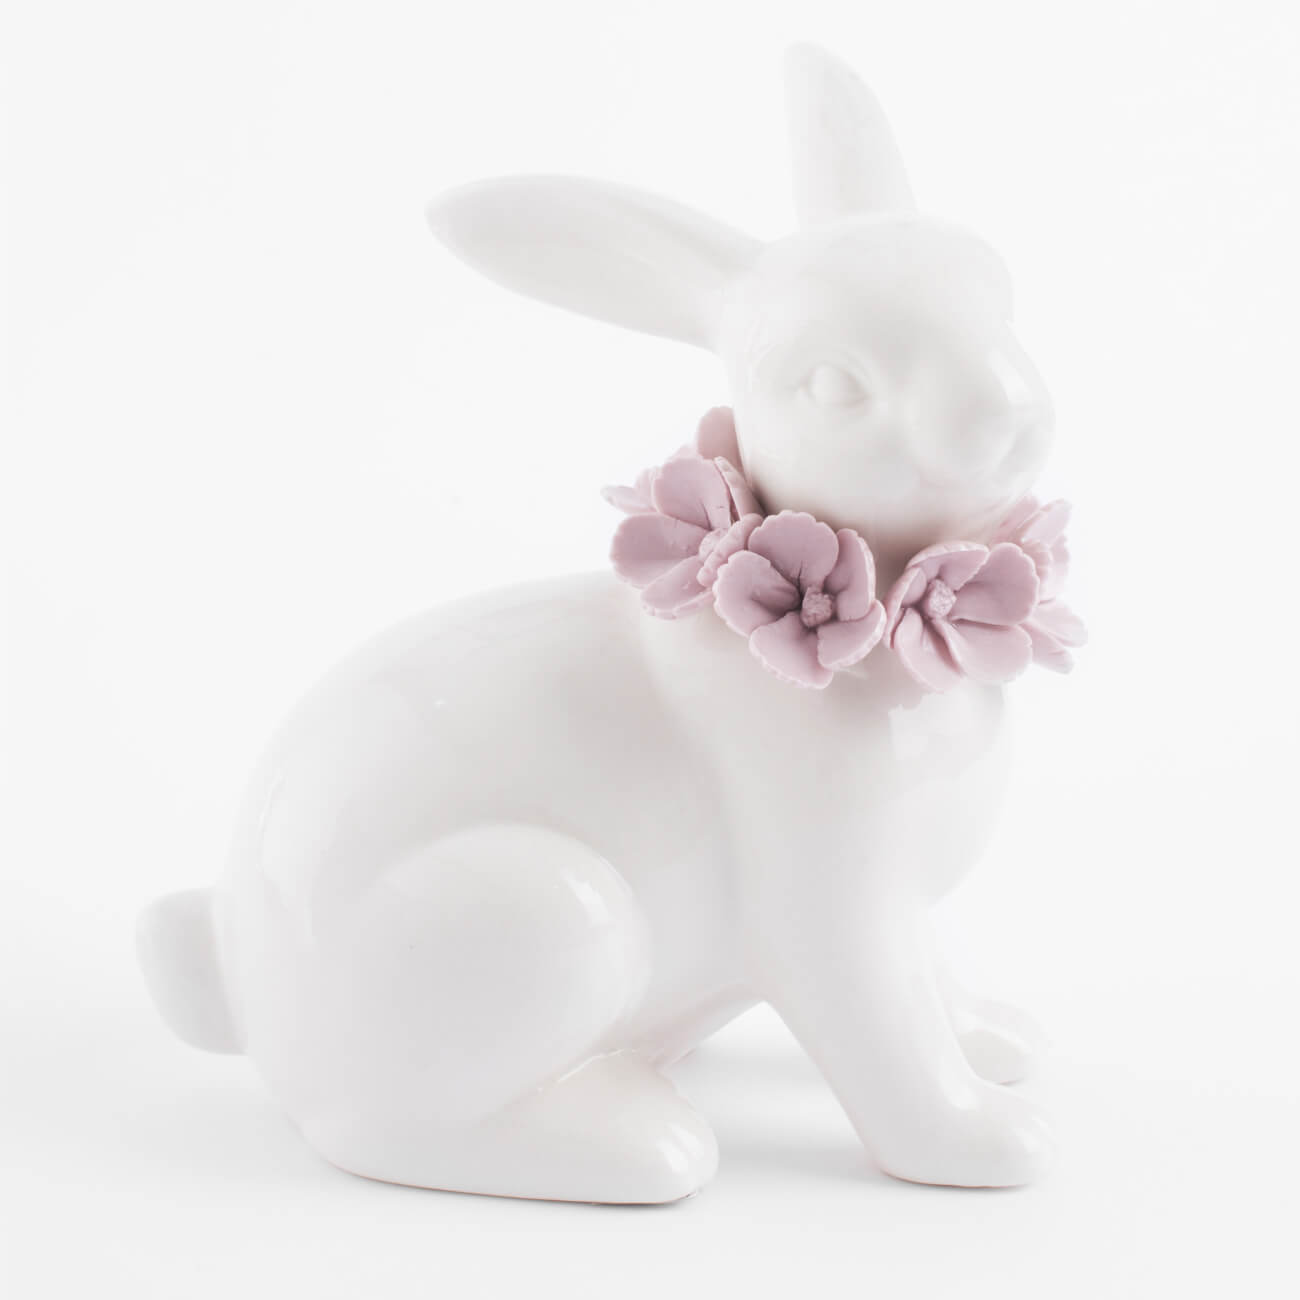 Статуэтка, 15 см, фарфор Porcelain, белая, Кролик в цветах, Pure Easter подставка для яйца 11 см фарфор p бело серая кролик со скорлупой pure easter